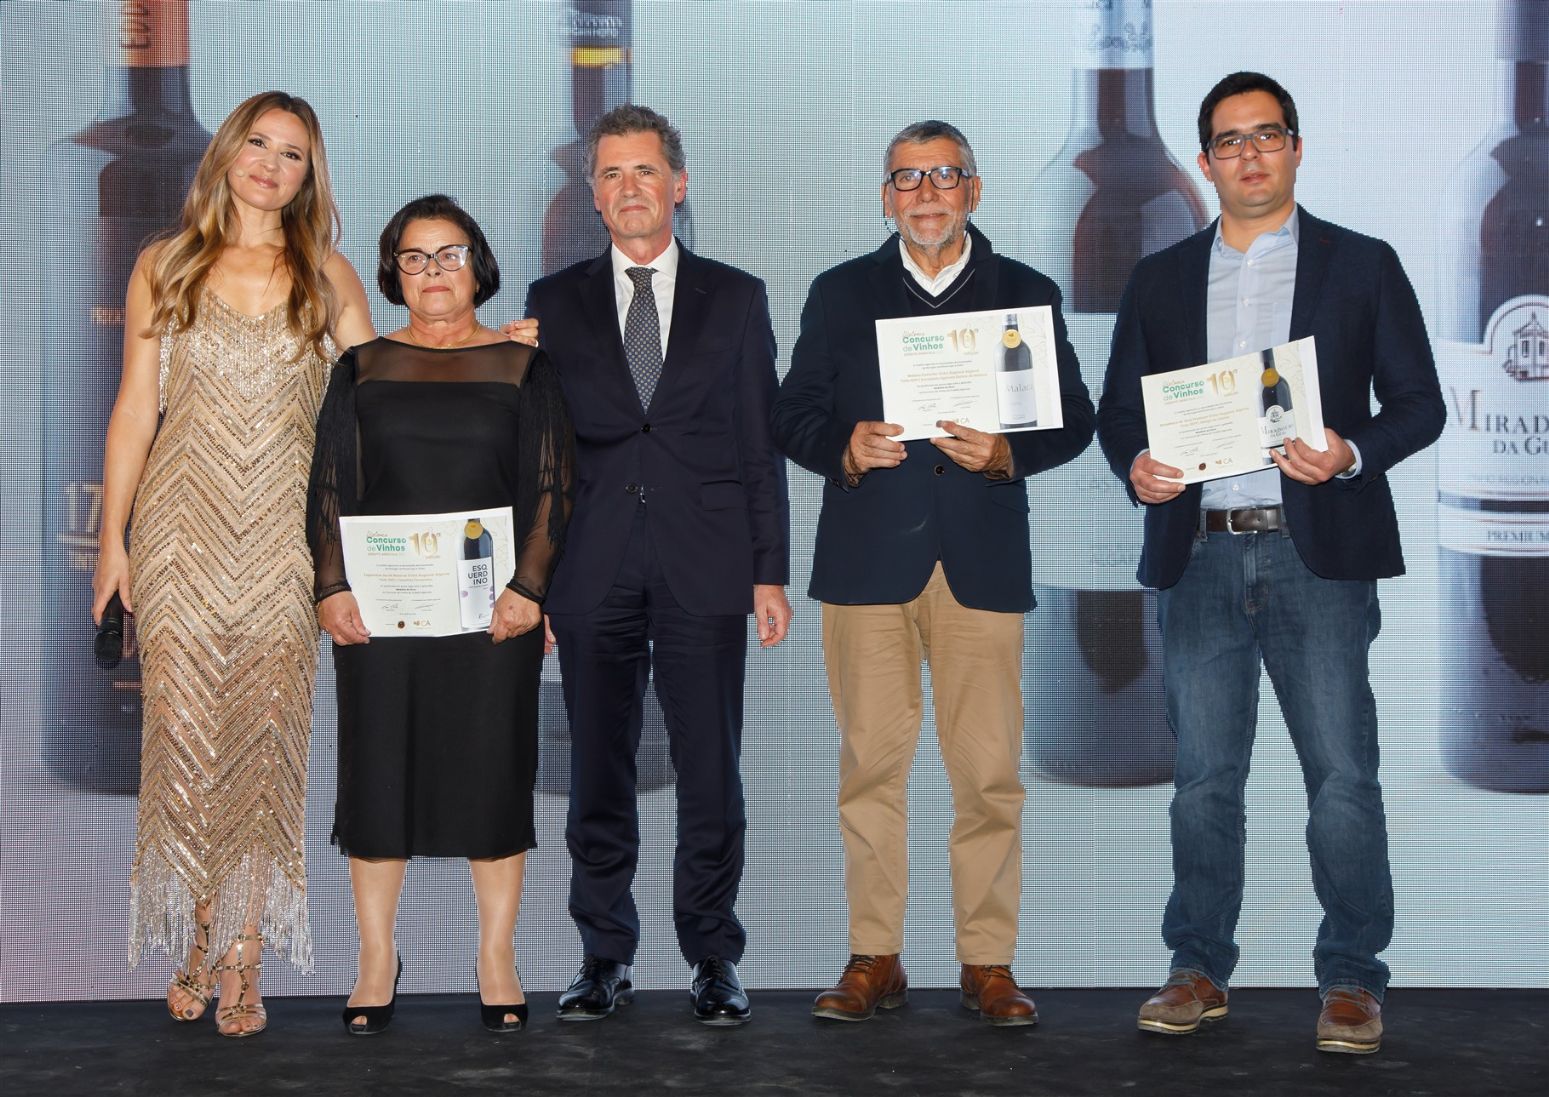 Cinco vinhos da Região do Algarve distinguidos com Ouro na 10ª Edição do Concurso de Vinhos do Crédito Agrícola